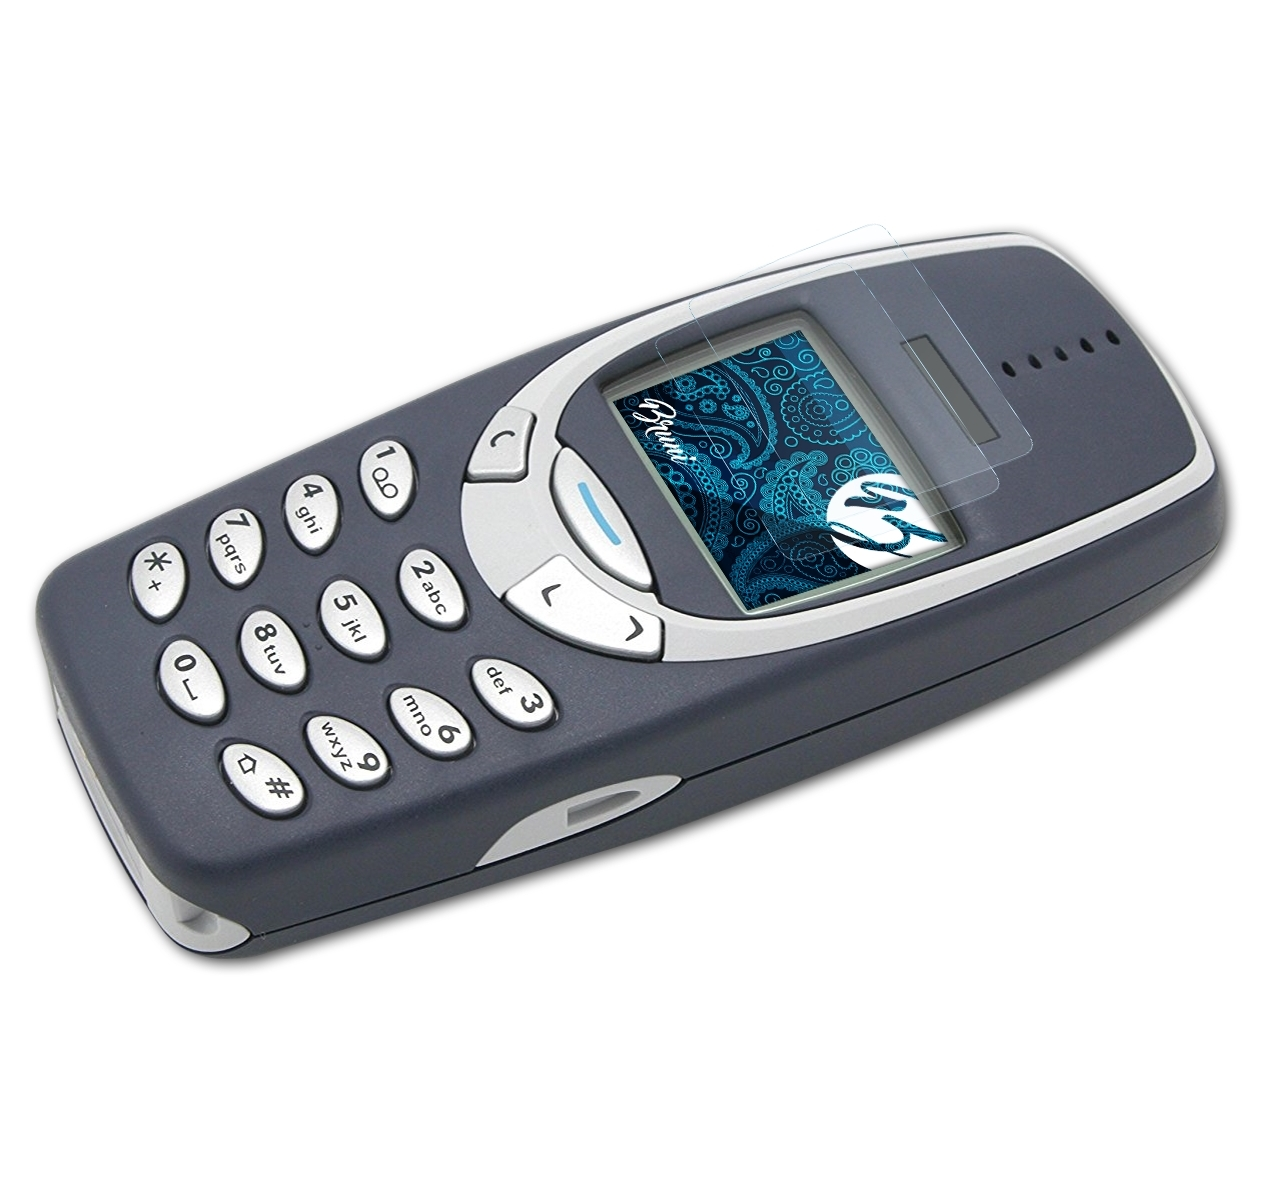 Basics-Clear Schutzfolie(für 2x 3310) BRUNI Nokia